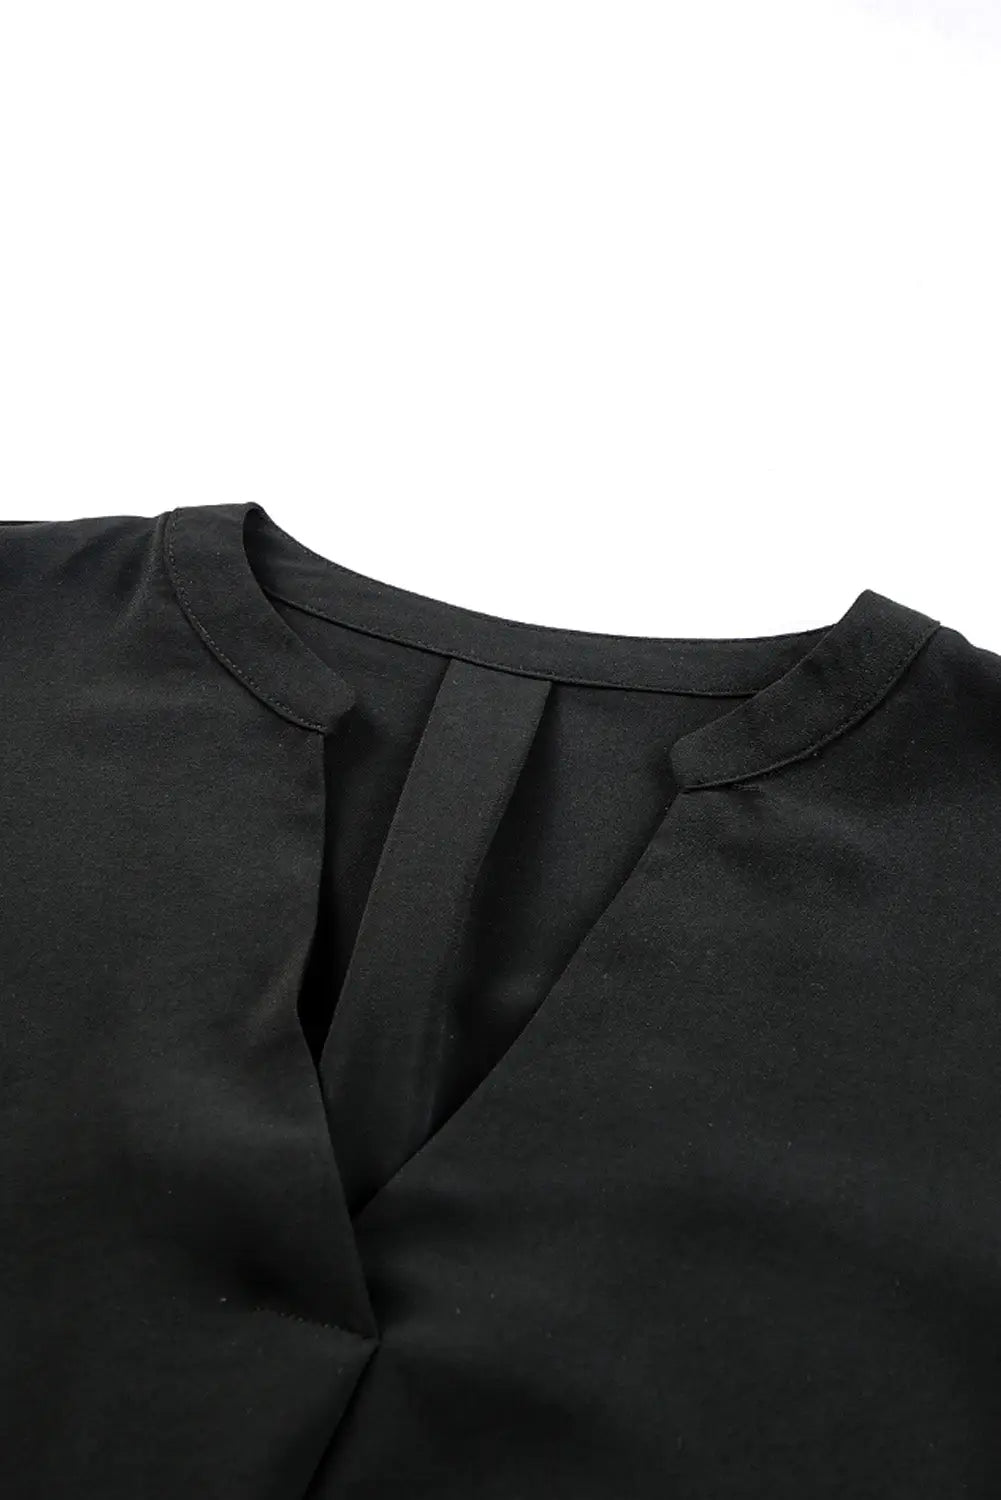 Black split v neck ruffled sleeves shirt dress - mini dresses